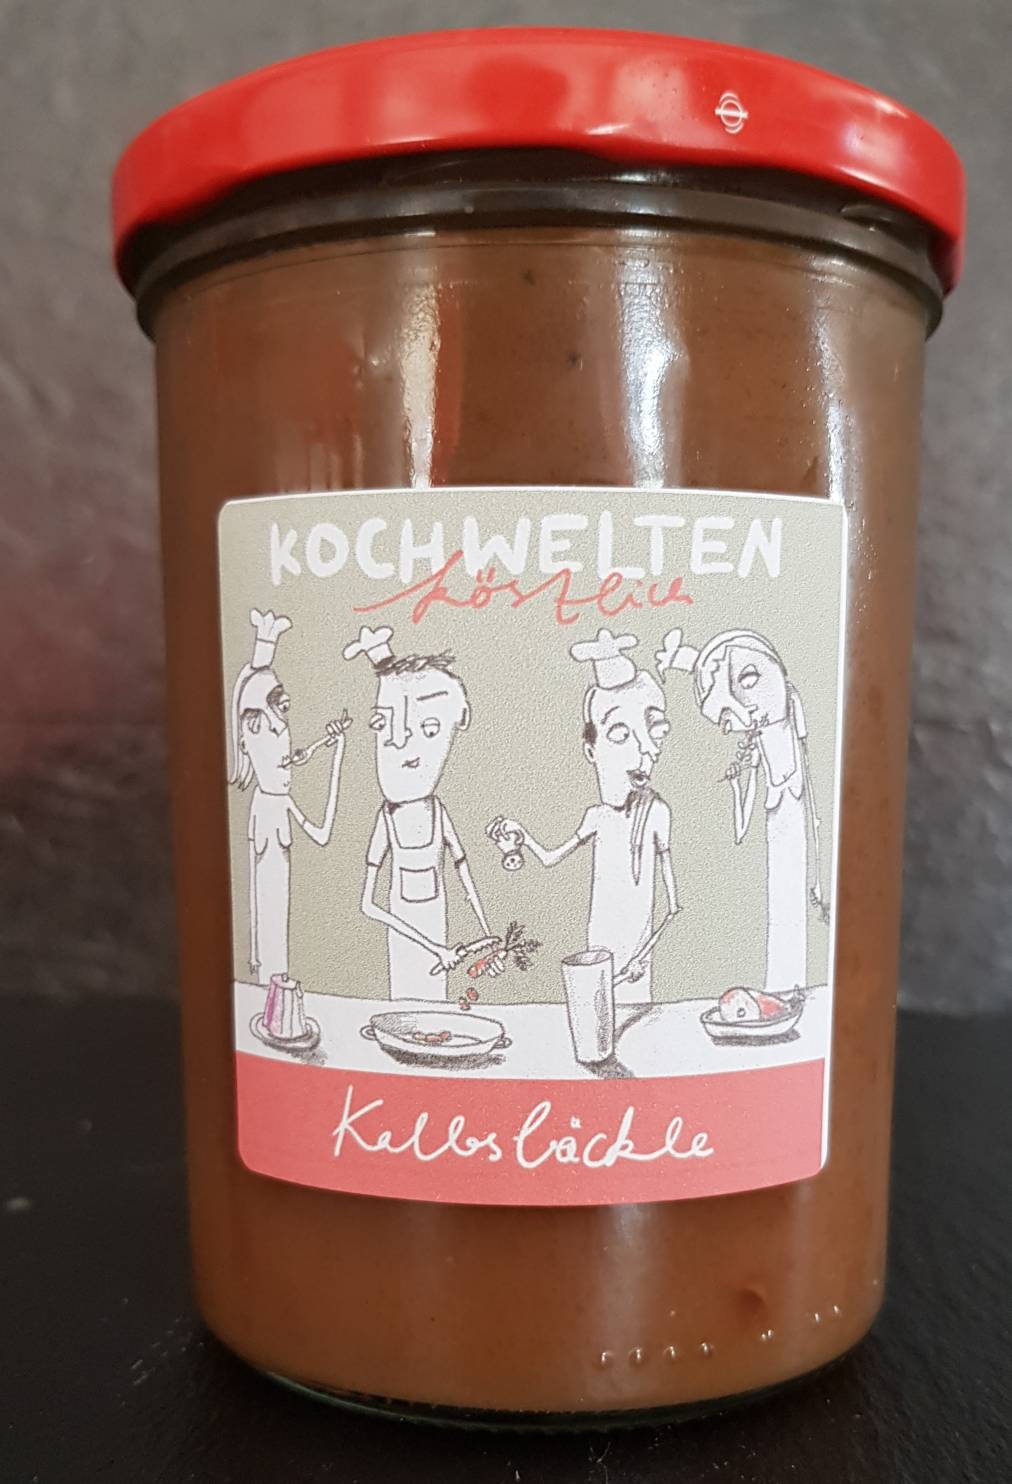 Kochschule Sonja Lenz Stuttgart Kochwelten Köstlich Geschmorte Kalbsbäckchen